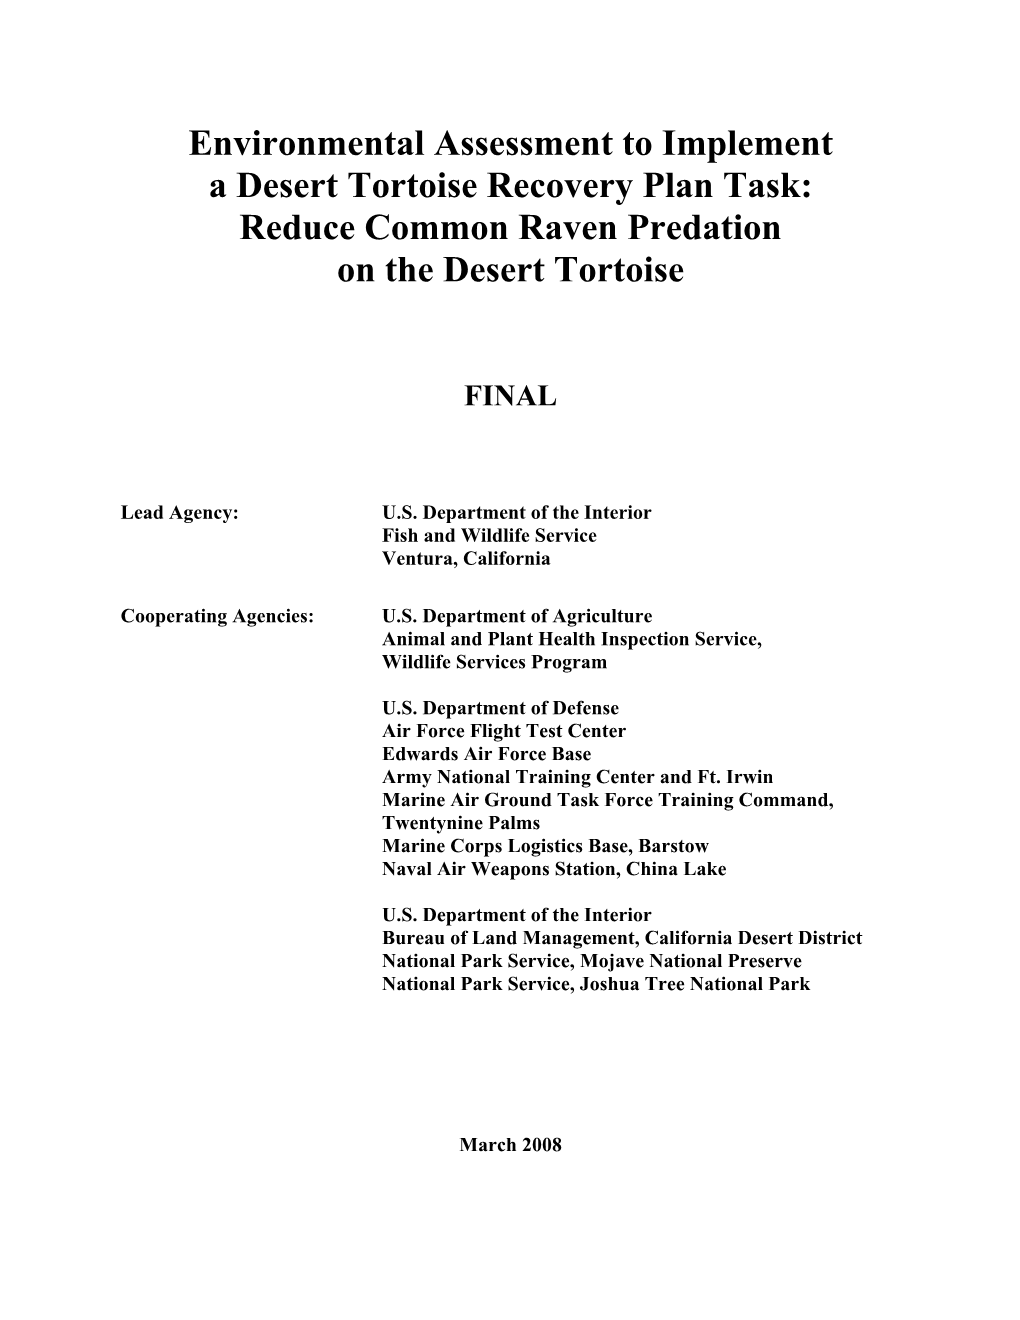 Environmental Assessment to Implement a Desert Tortoise Recovery Plan Task: Reduce Common Raven Predation on the Desert Tortoise